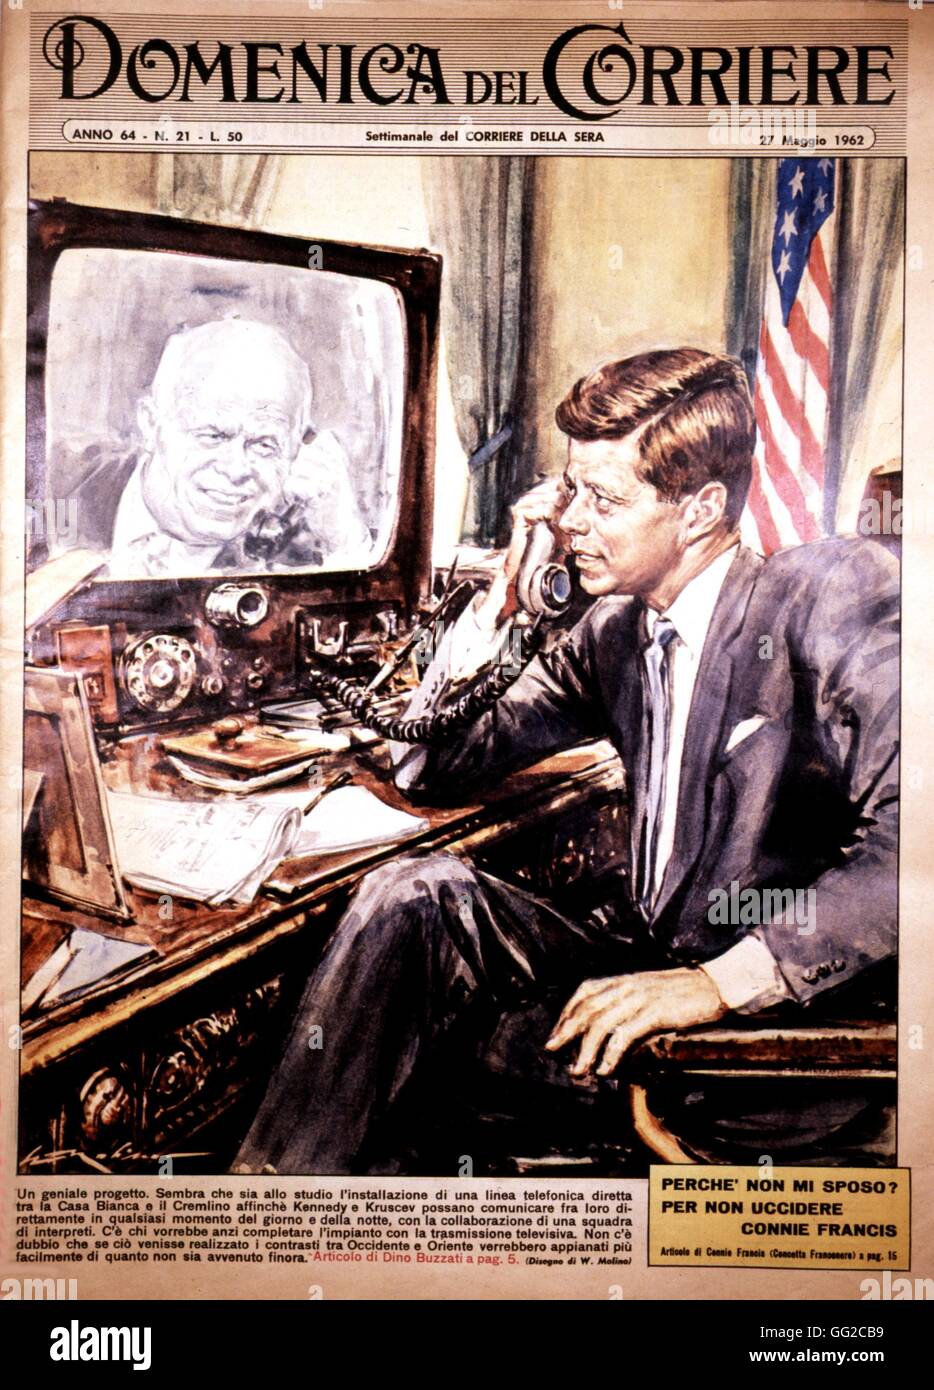 Il telefono rosso rouge, linea diretta tra il Cremlino e la Casa Bianca. J.F. Kennedy e Khrushchev sul coperchio del 'Domenica del Corriere" datato 27 maggio 1962 Stati Uniti - U.R.S.S. Collezione privata Foto Stock